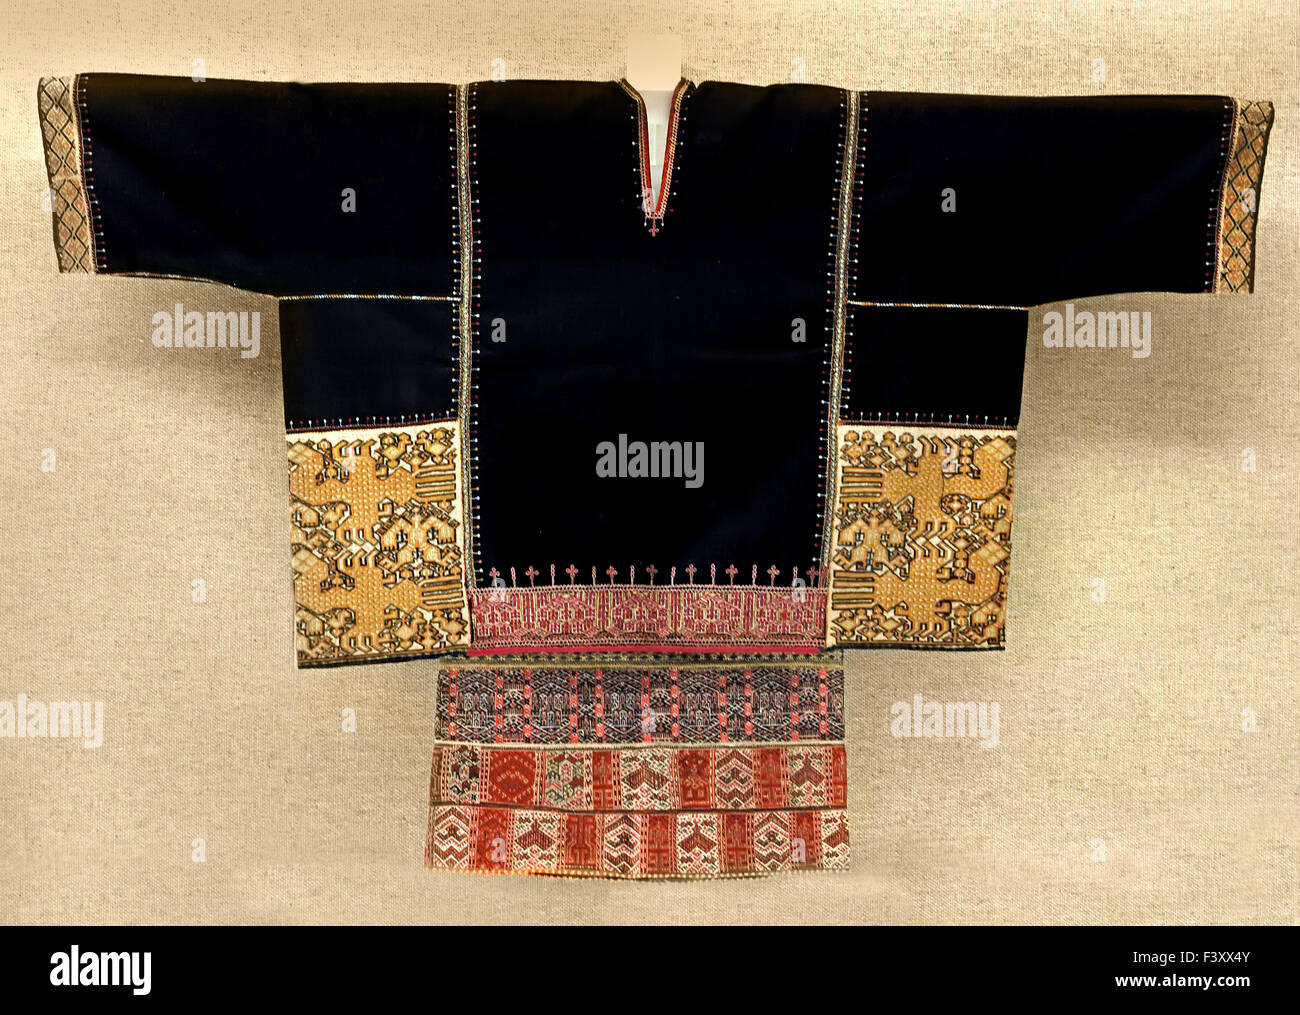 Haut de femme orné de motif tissé Li ( Tongshi Hainan ) 2e moitié 20e siècle Musée de Shanghai de l'ancien art chinois Chine Banque D'Images